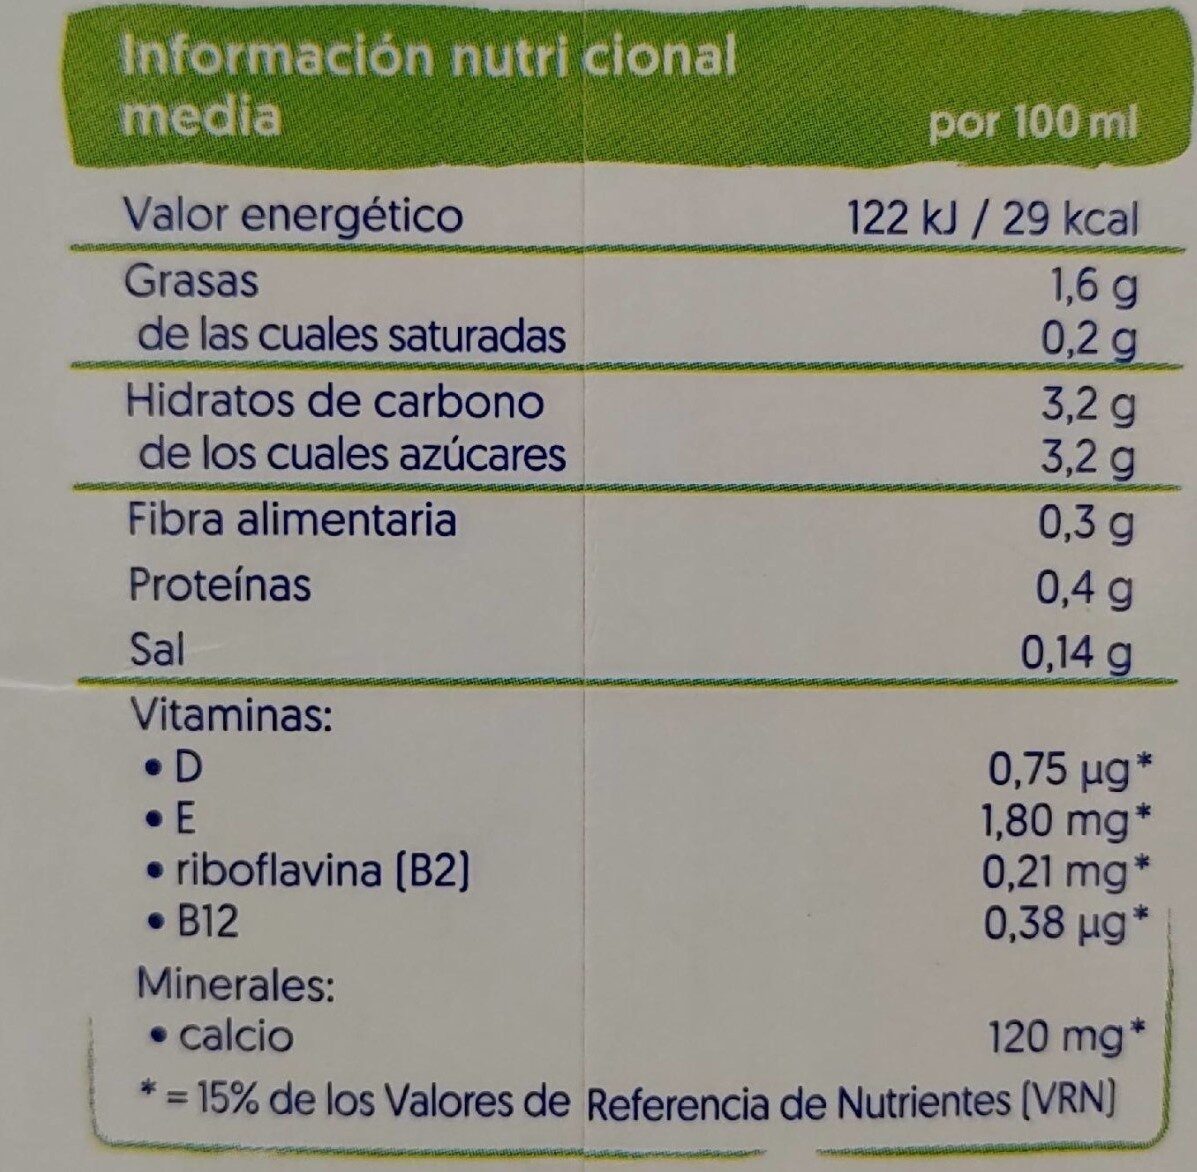 Alpro avellanas - Nutrition facts - es